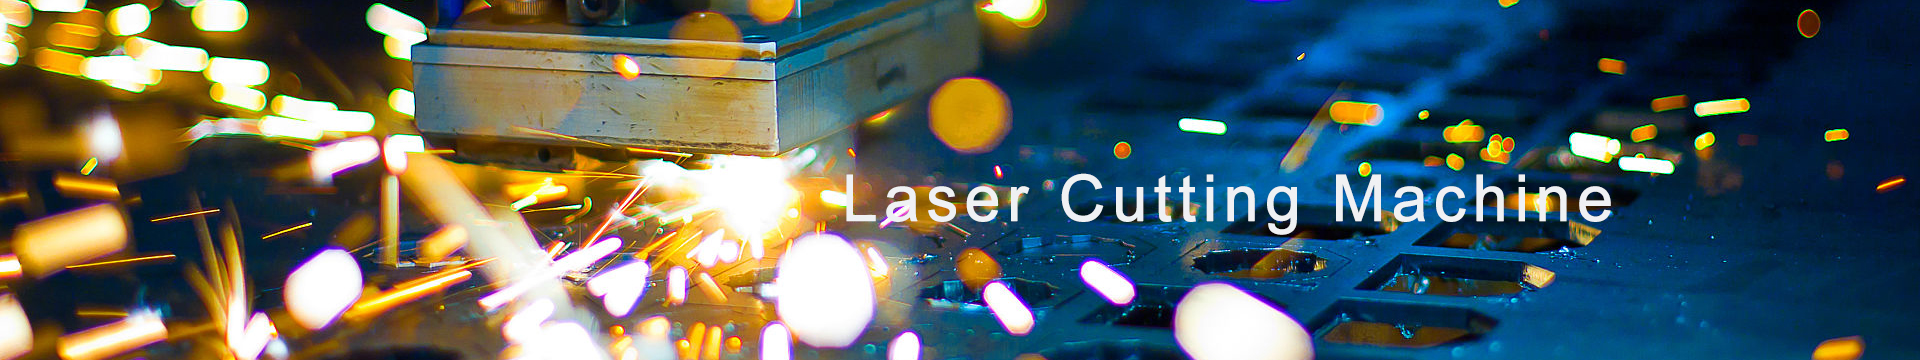 laser cutting machine banner